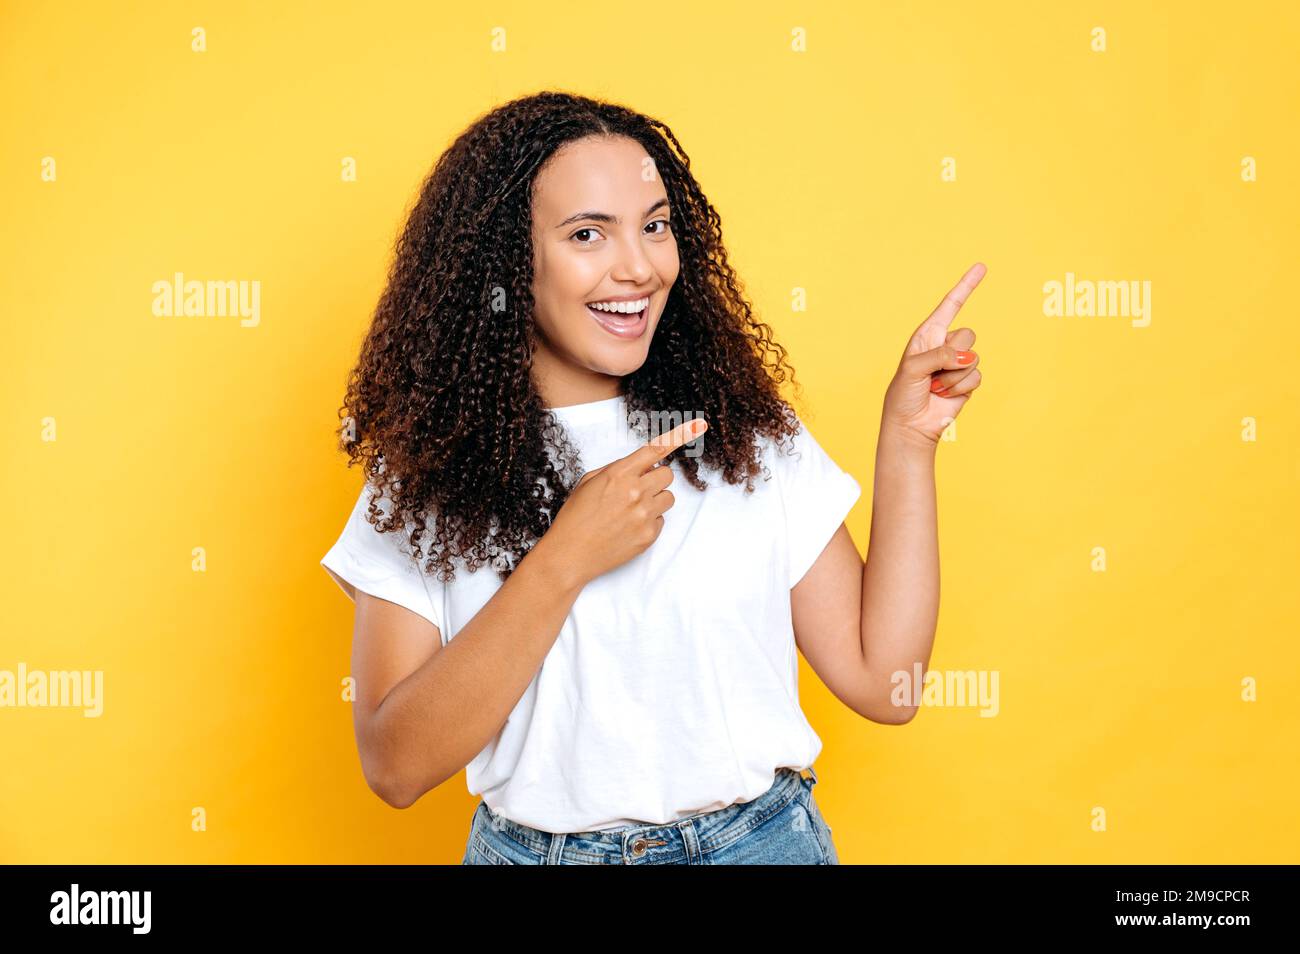 Fröhliche, gemischte Rasse Frau mit lockigem Haar, trägt ein weißes T-Shirt, zeigt mit beiden Händen auf einen leeren Raum, schaut in die Kamera, lächelt, steht über isoliertem gelben Hintergrund Stockfoto